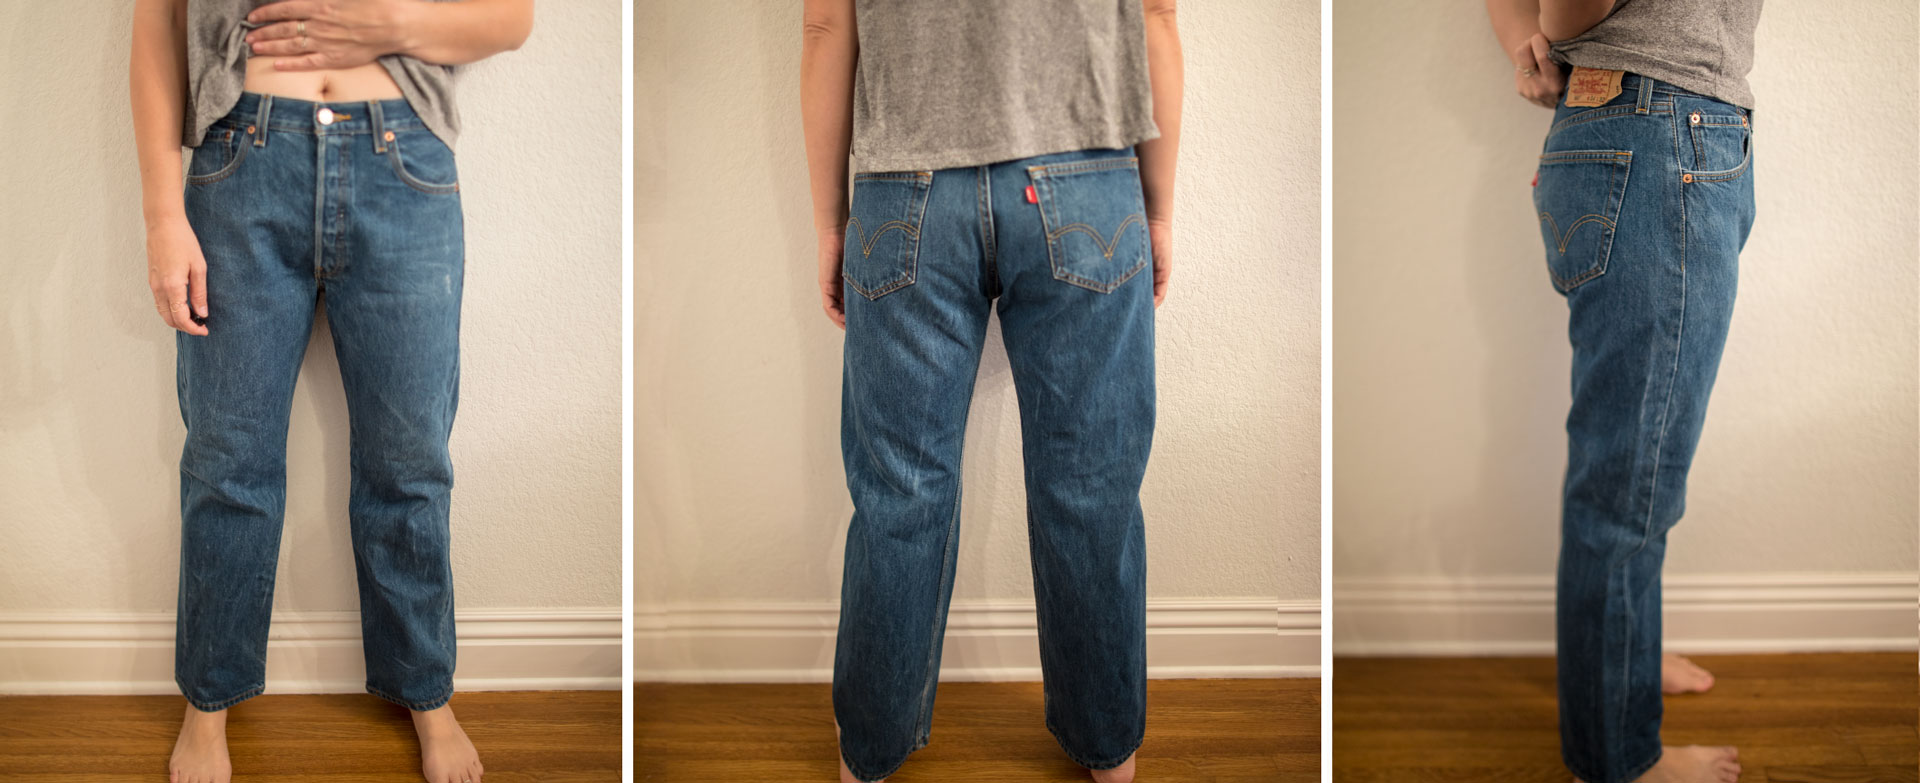 levis jeans sizes conversion